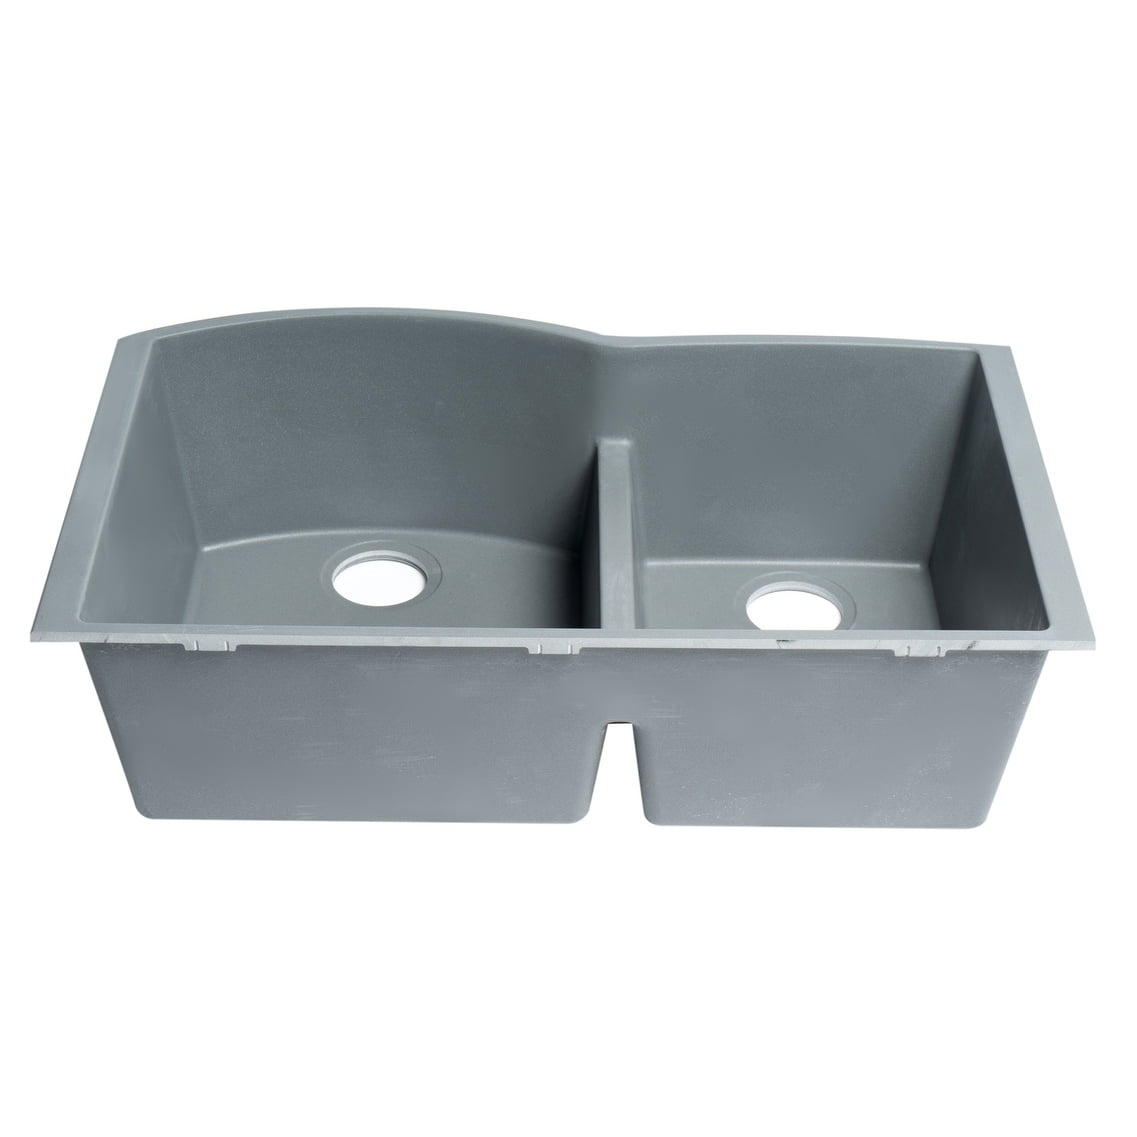 Alfi Brand Ab3320um T Titanium 33 Double Undermount Granite Composite Kitchen Sink